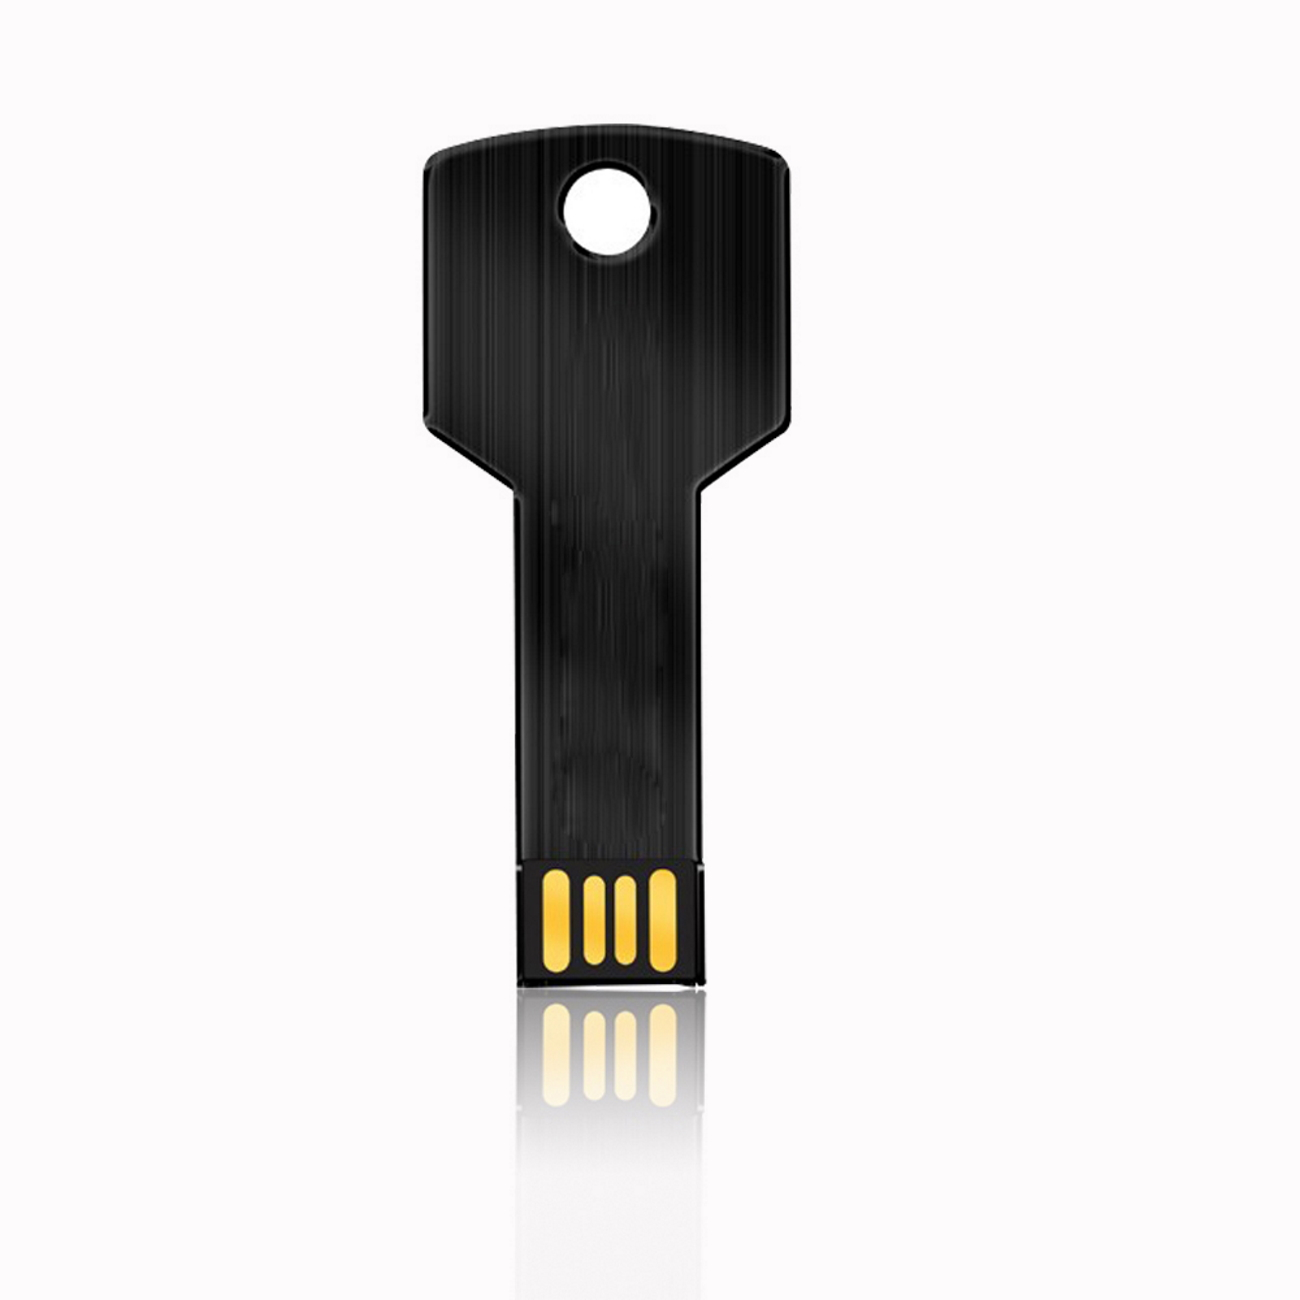 4GB Key USB USB-Stick 4 GB) Schwarz GERMANY (Schwarz,